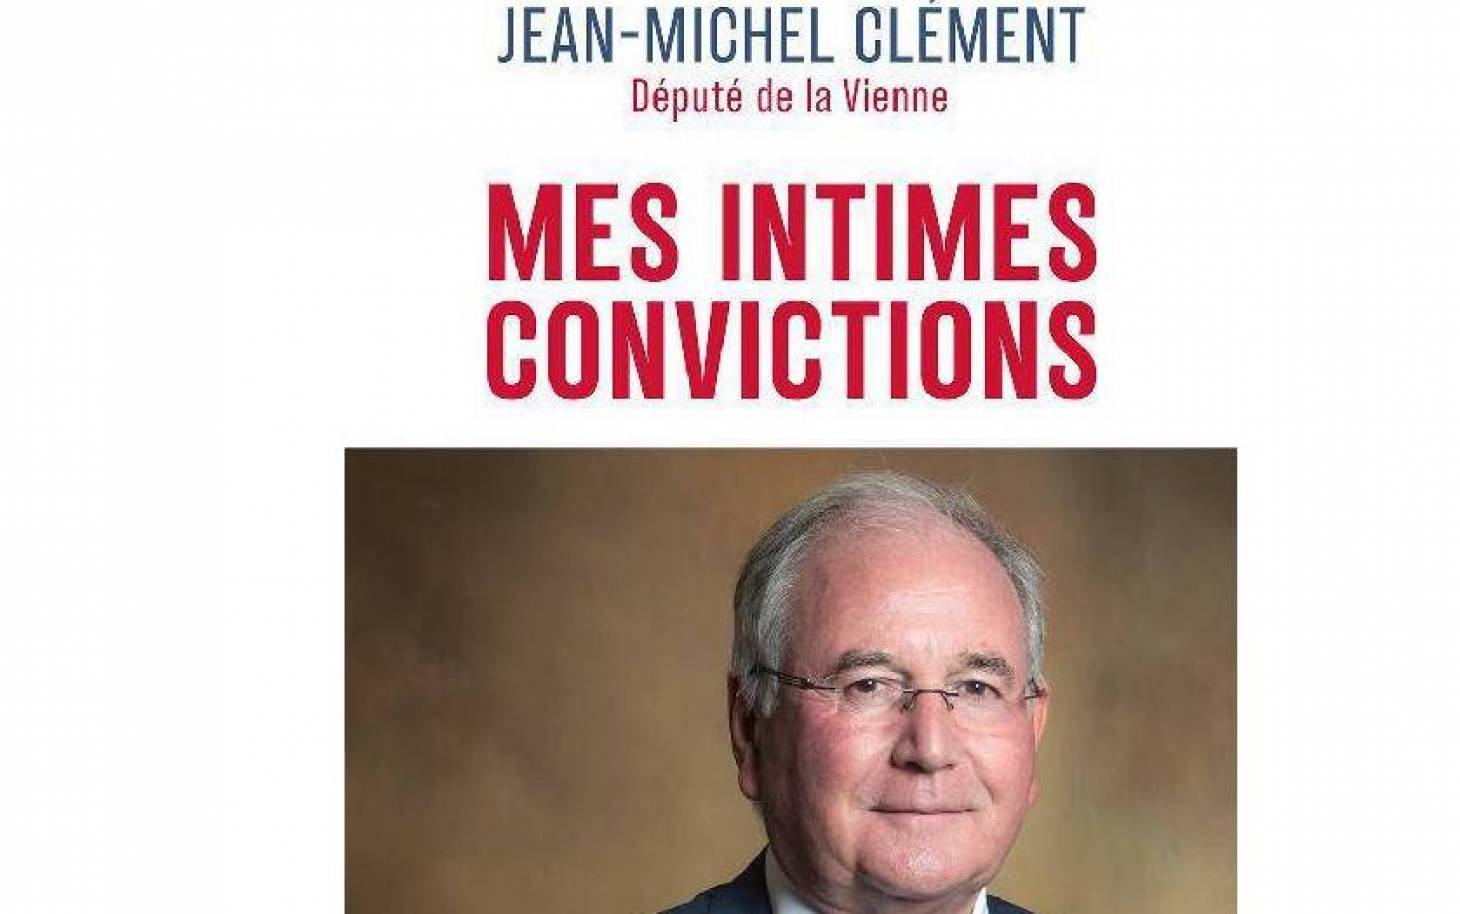 Les intimes convictions de Jean-Michel Clément